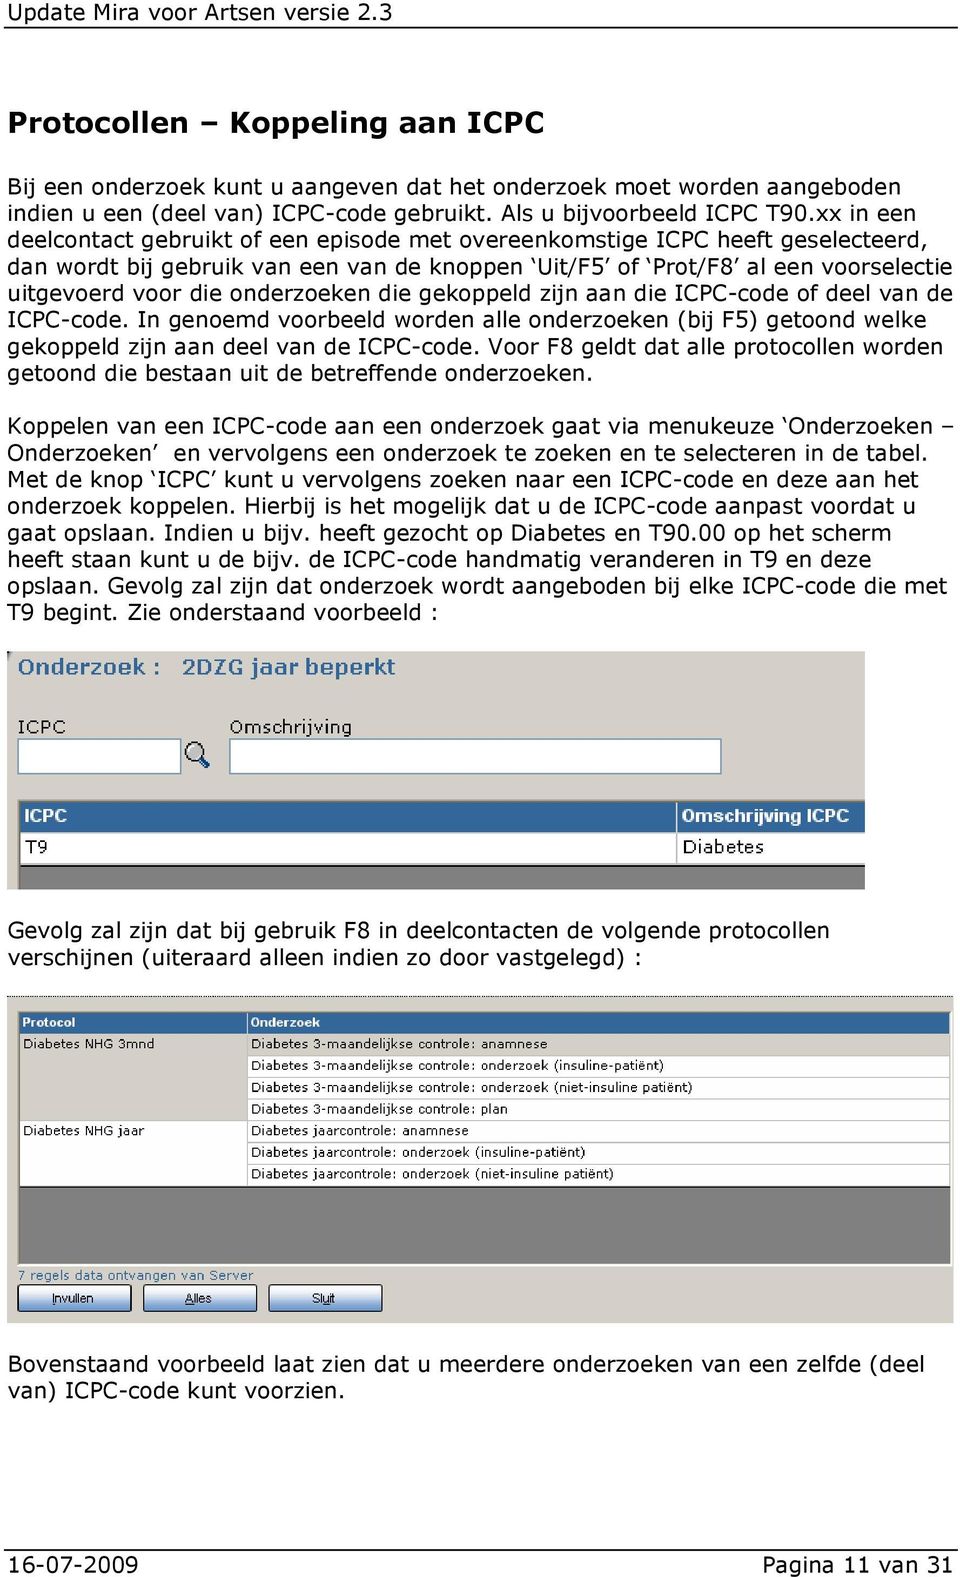 onderzoeken die gekoppeld zijn aan die ICPC-code of deel van de ICPC-code. In genoemd voorbeeld worden alle onderzoeken (bij F5) getoond welke gekoppeld zijn aan deel van de ICPC-code.